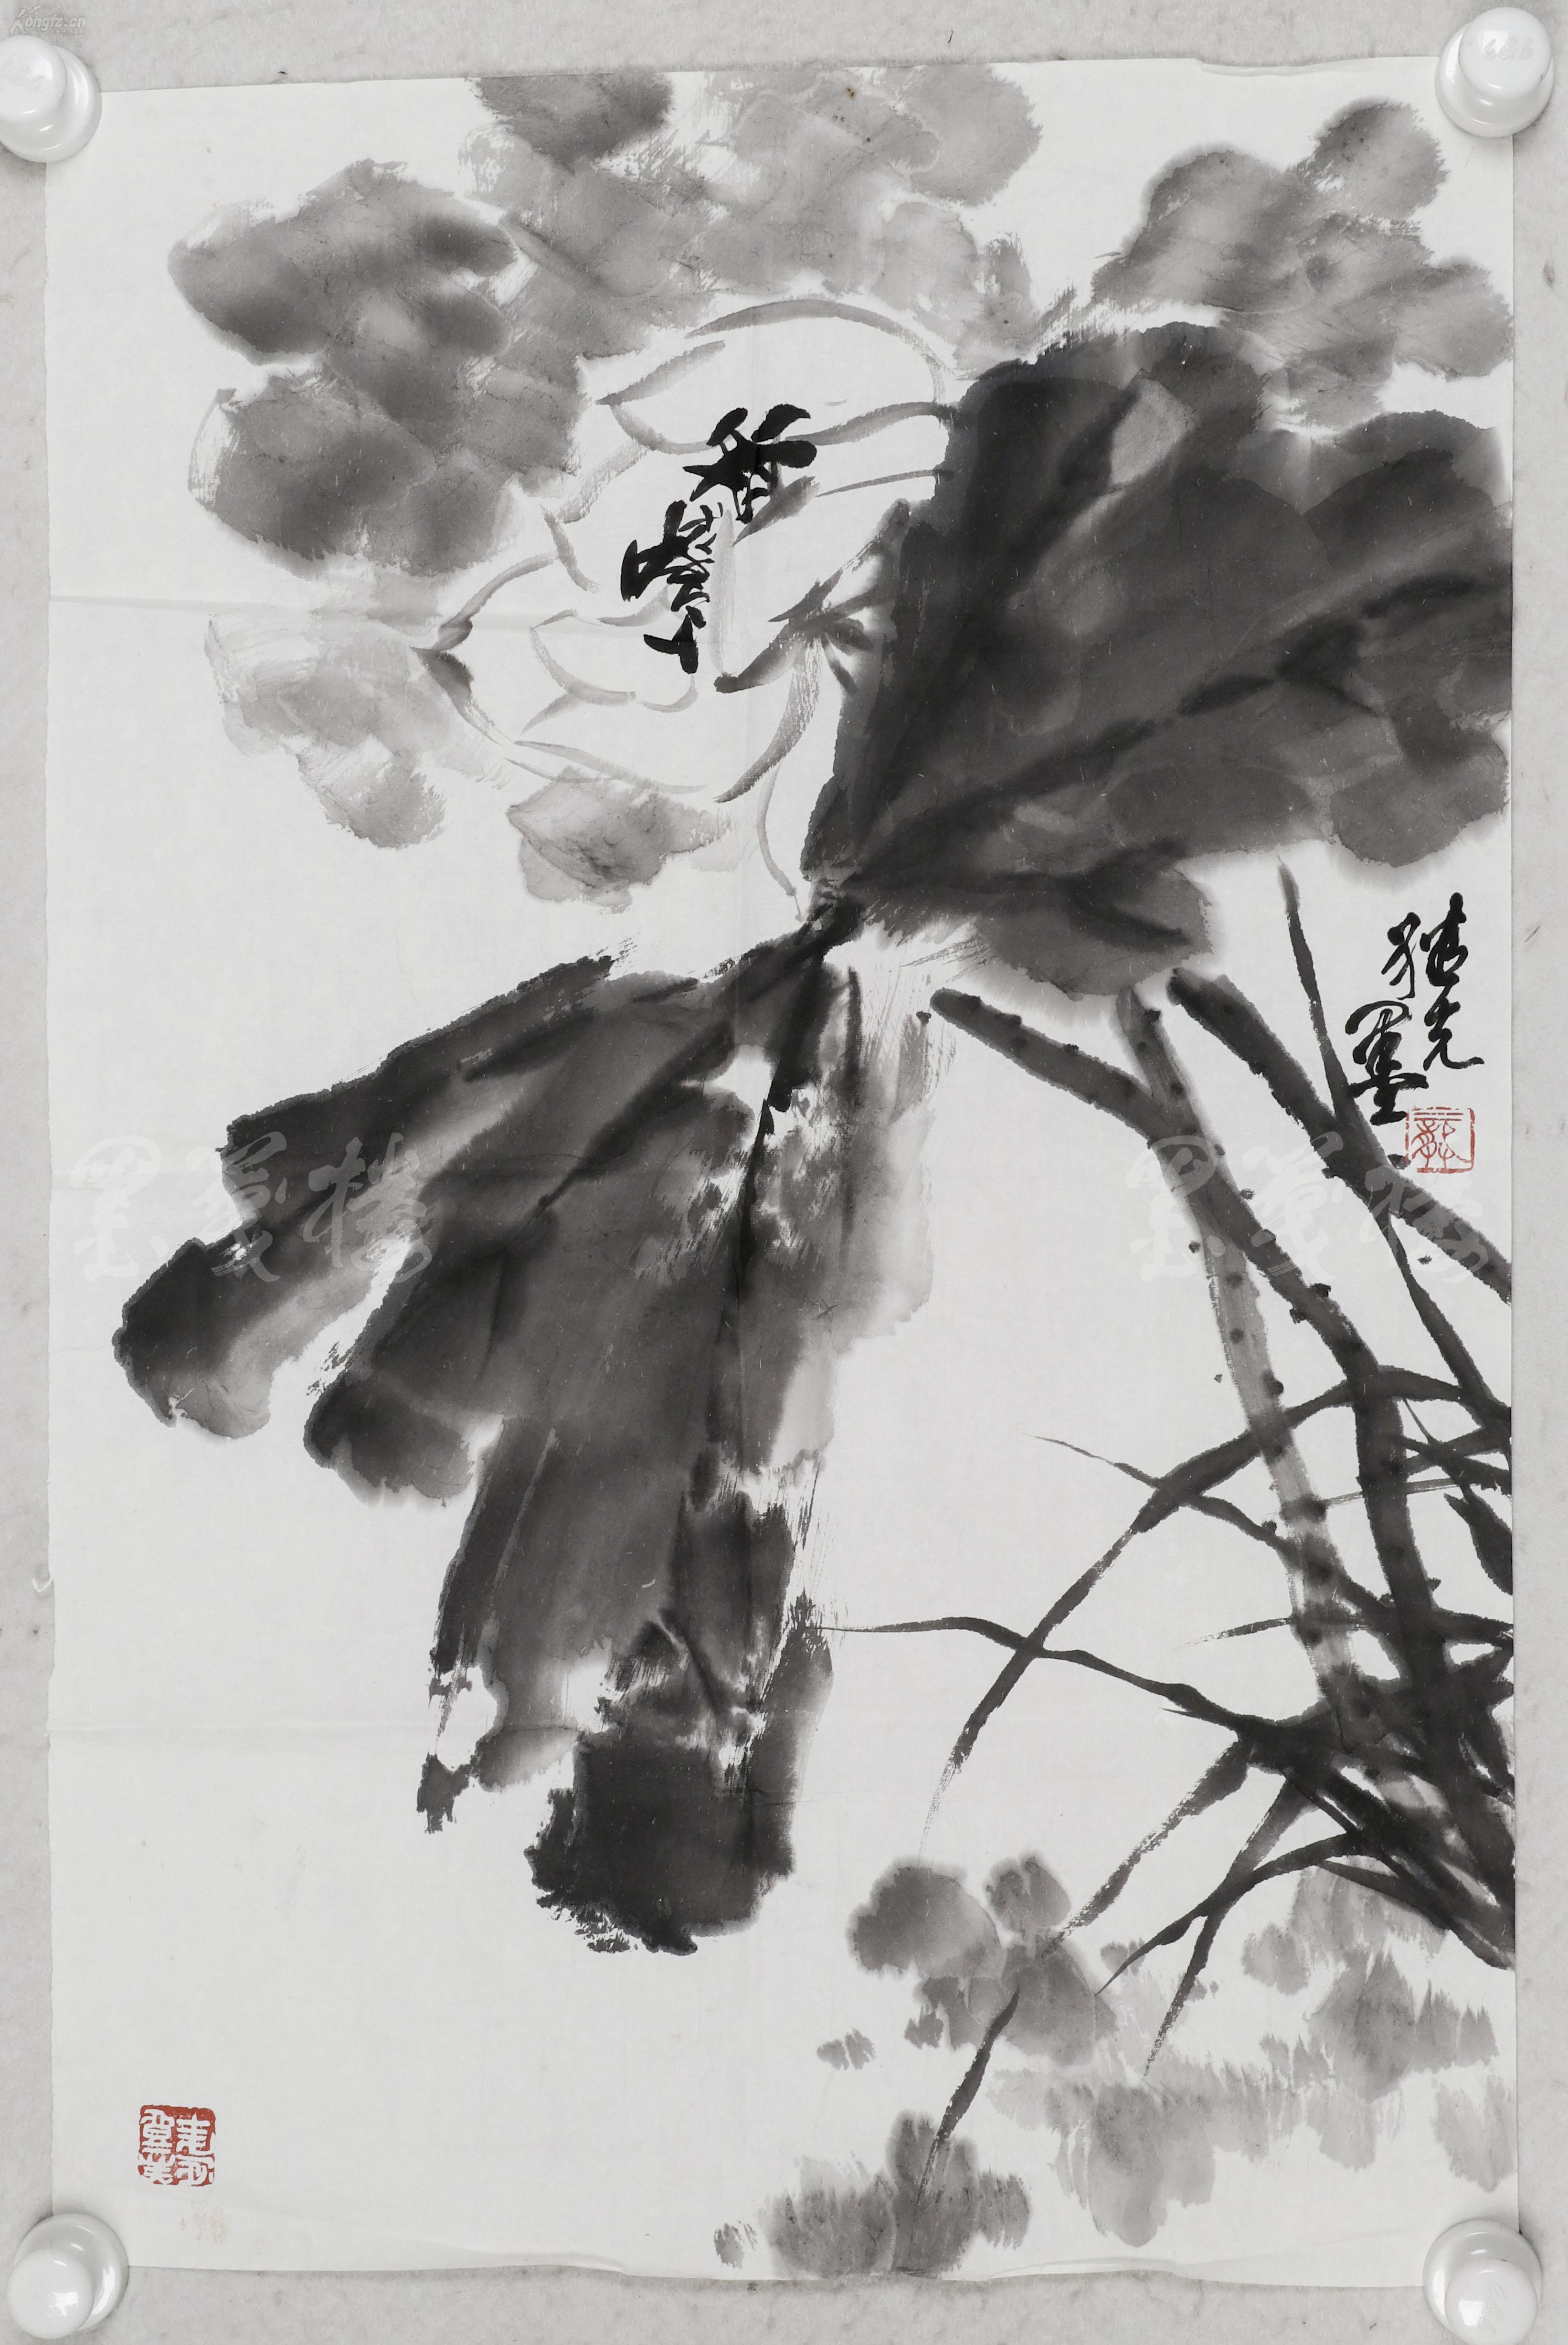 国家一级美术师,著名画家,上海美协理事 龚继先 水墨画作品"荷花"一幅